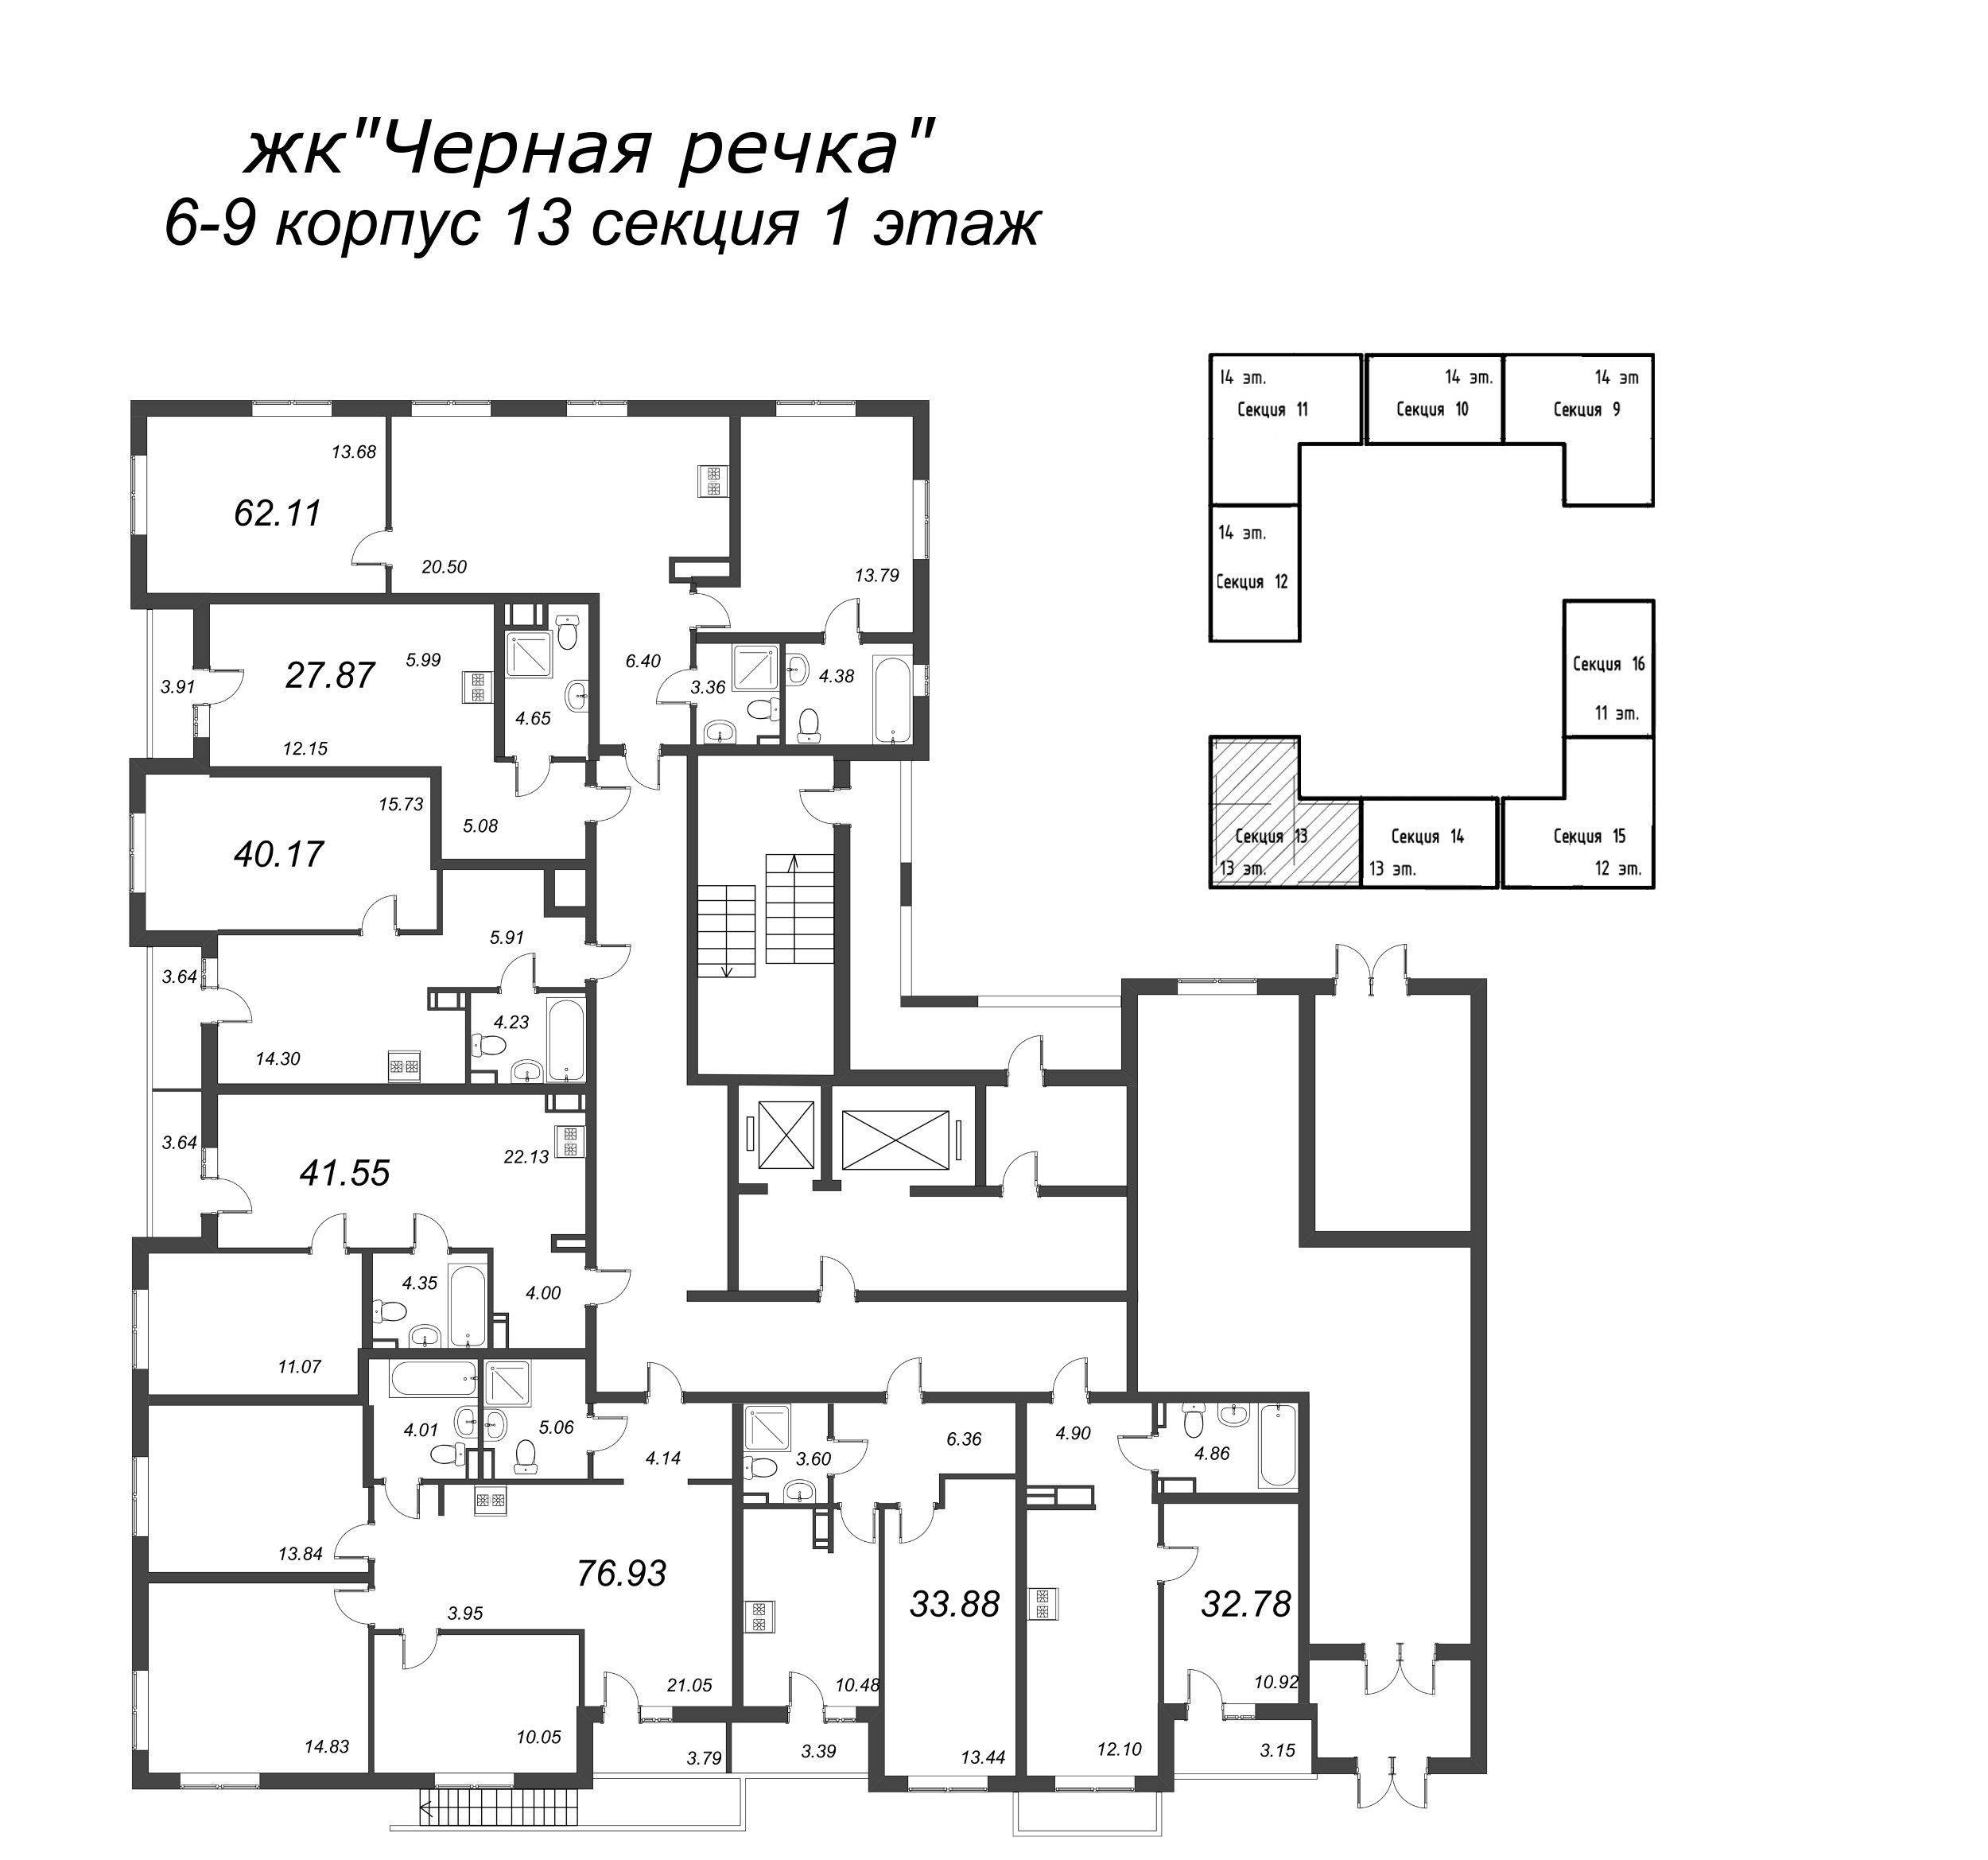 3-комнатная (Евро) квартира, 62.11 м² в ЖК "Чёрная речка" - планировка этажа